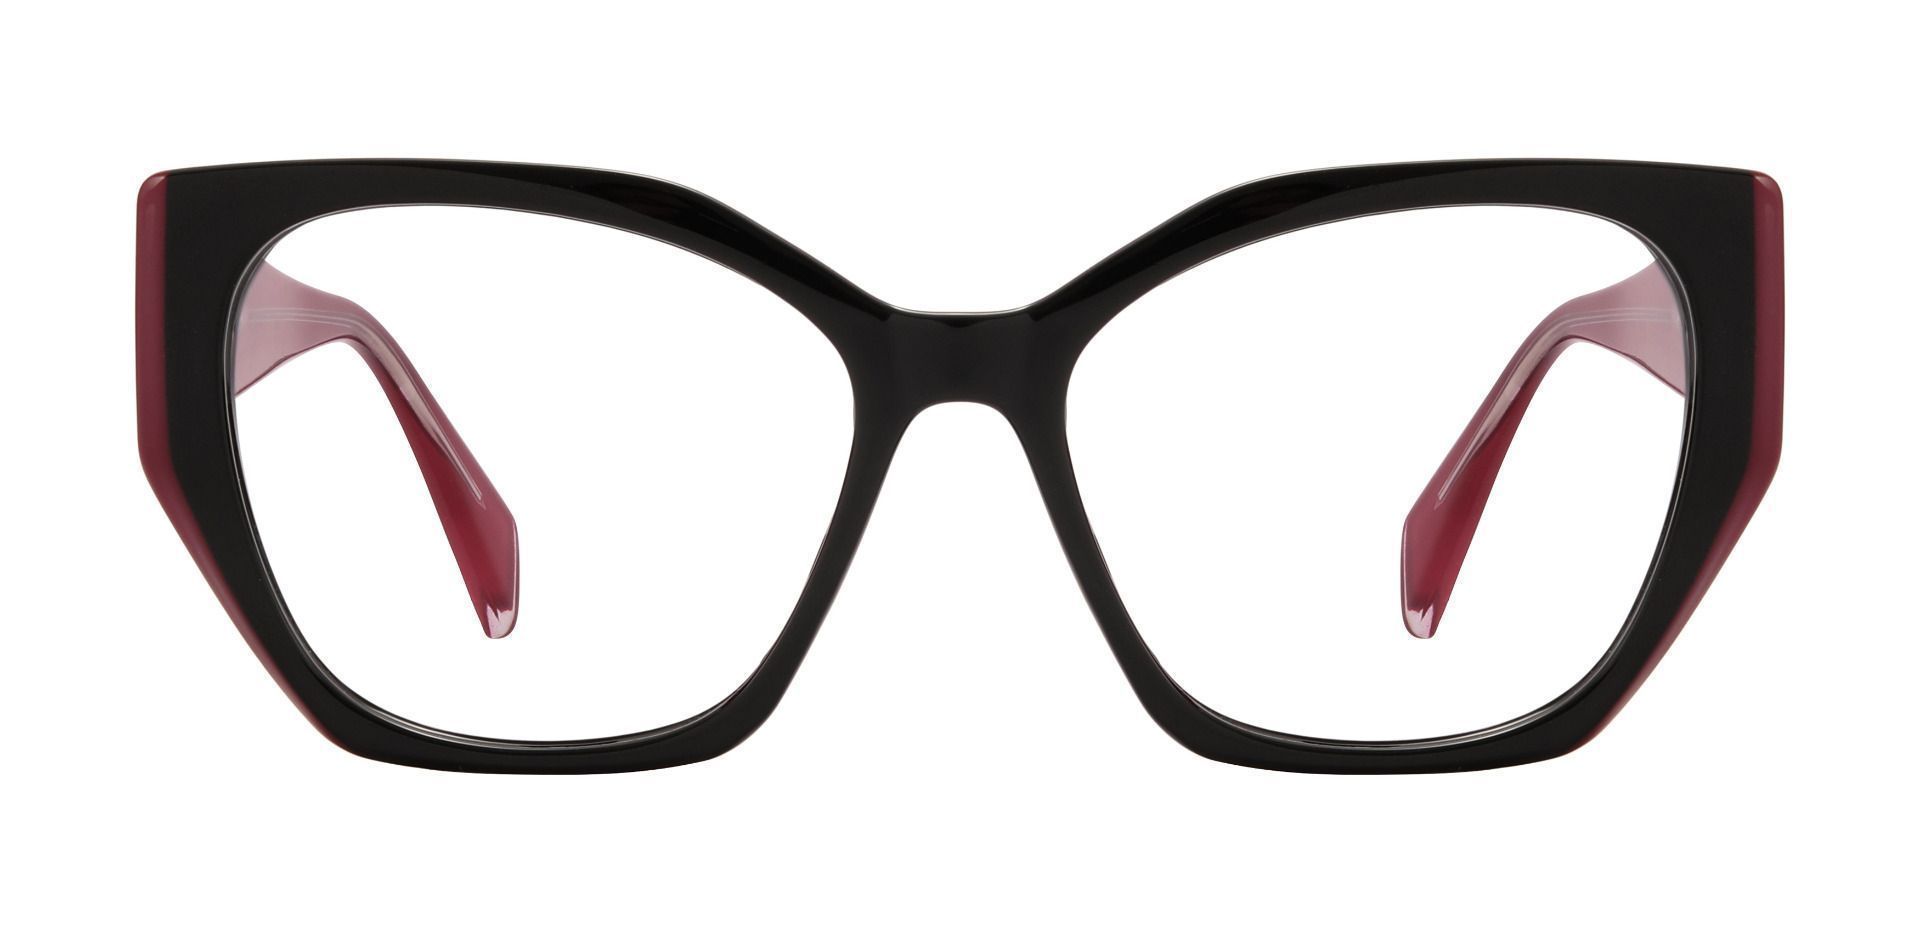 Mai Tai Geometric Prescription Glasses - Red